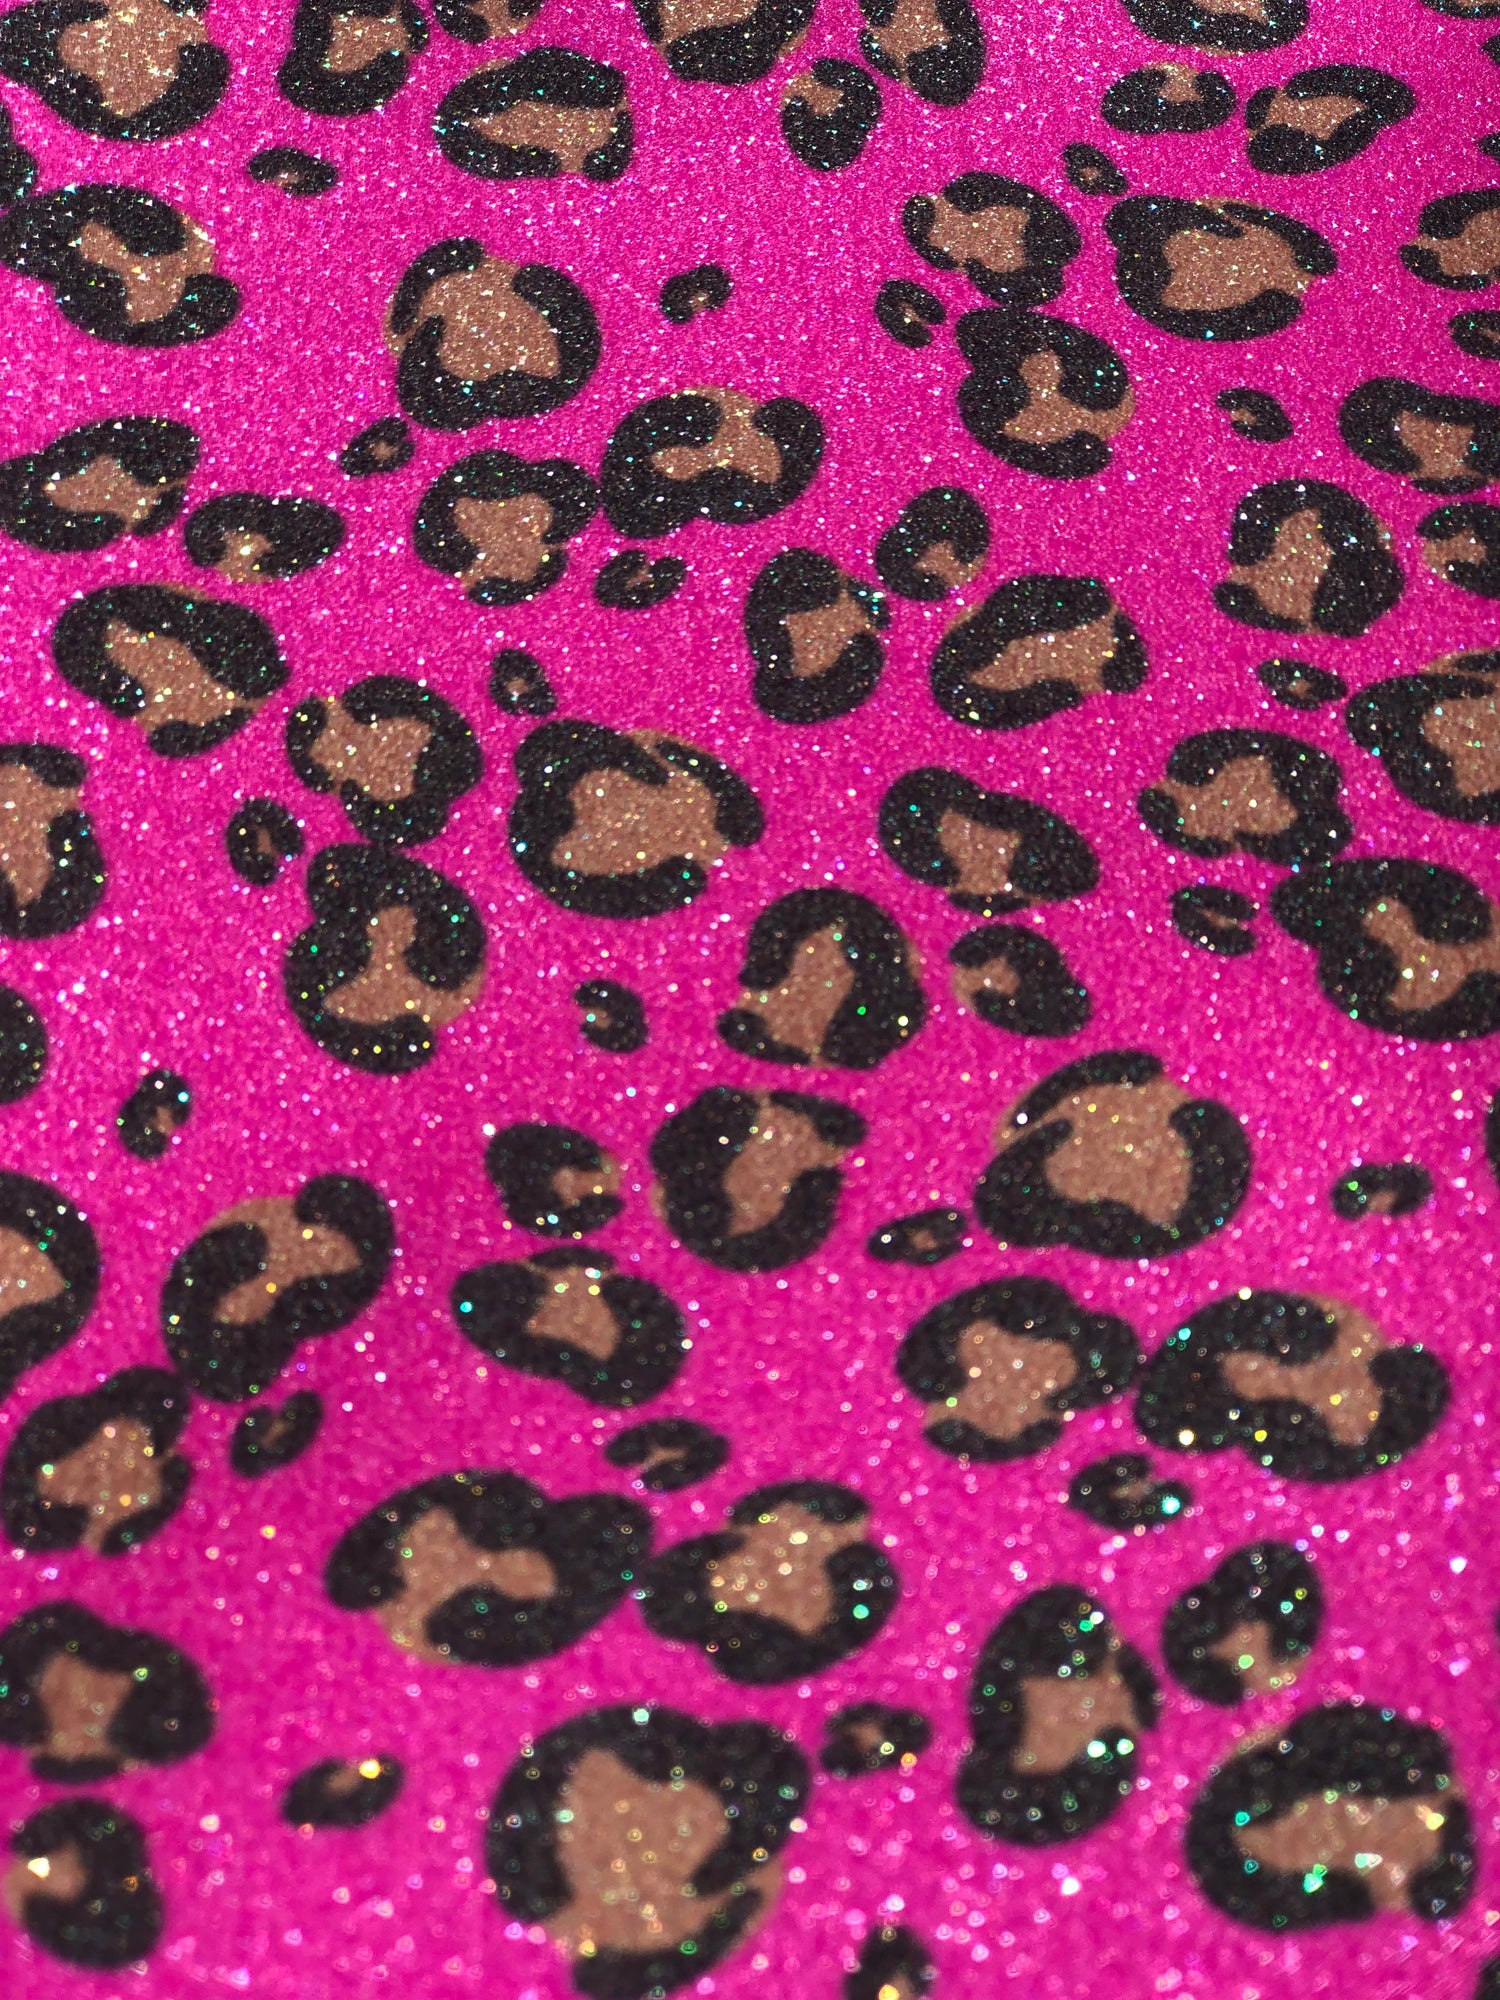 Cheetah Glitter Wallpaper, Leopard Wallpaper, Glitter Wallpaper  Cheetah  print wallpaper, Leopard print wallpaper, Glitter wallpaper